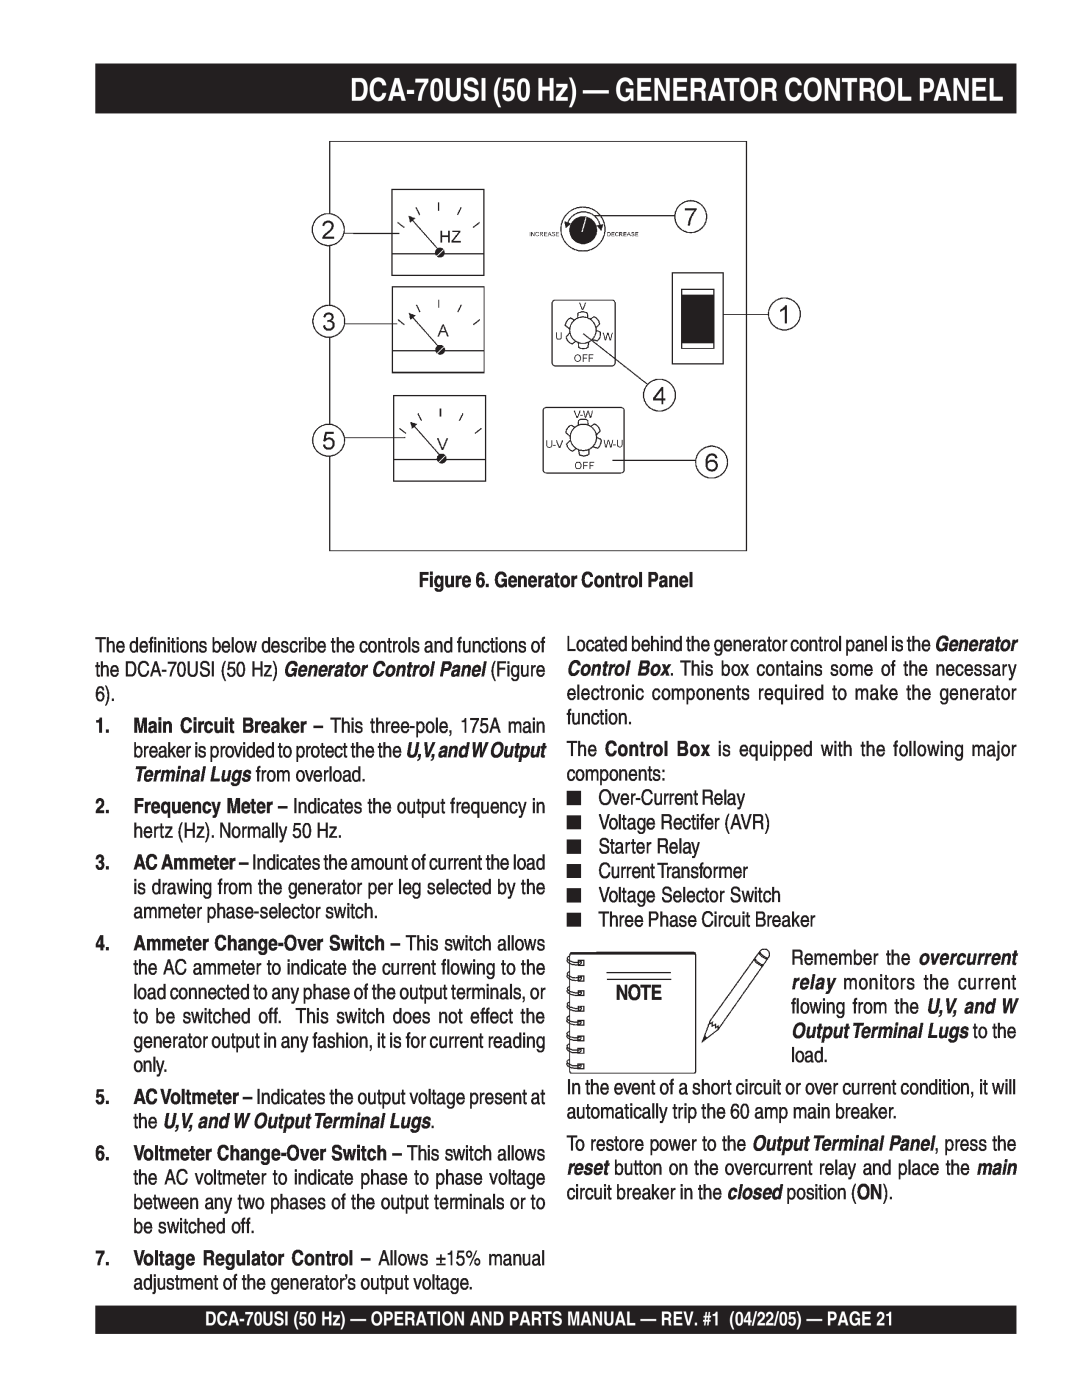 Multiquip operation manual DCA-70USI50 Hz — GENERATOR CONTROL PANEL, Generator Control Panel 